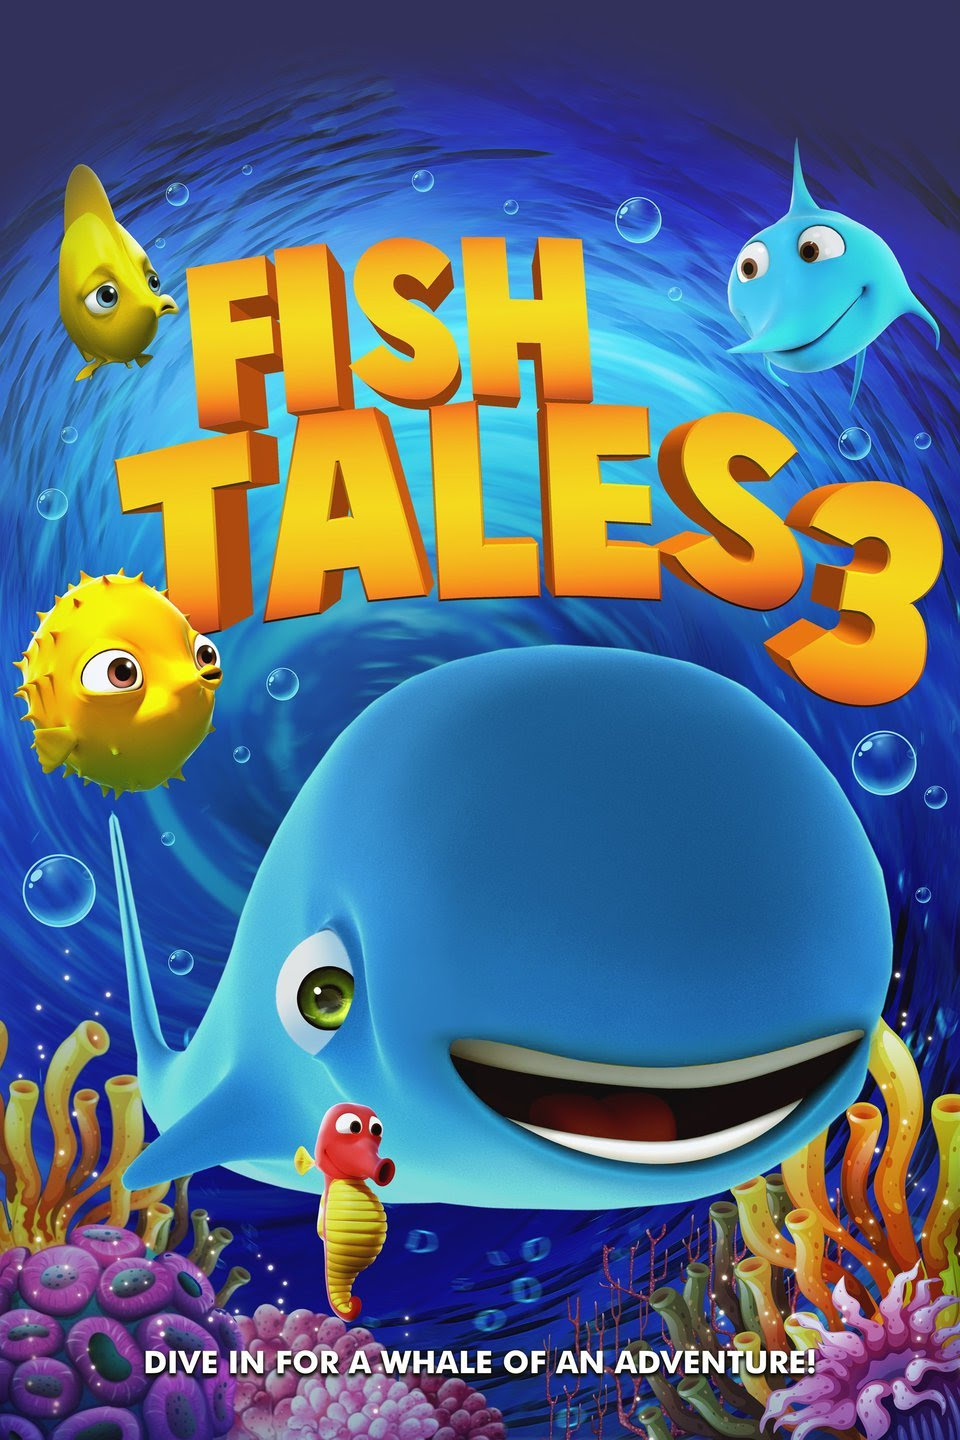 Fish Tales 3 (2018) Region Free DVD - SKNMART